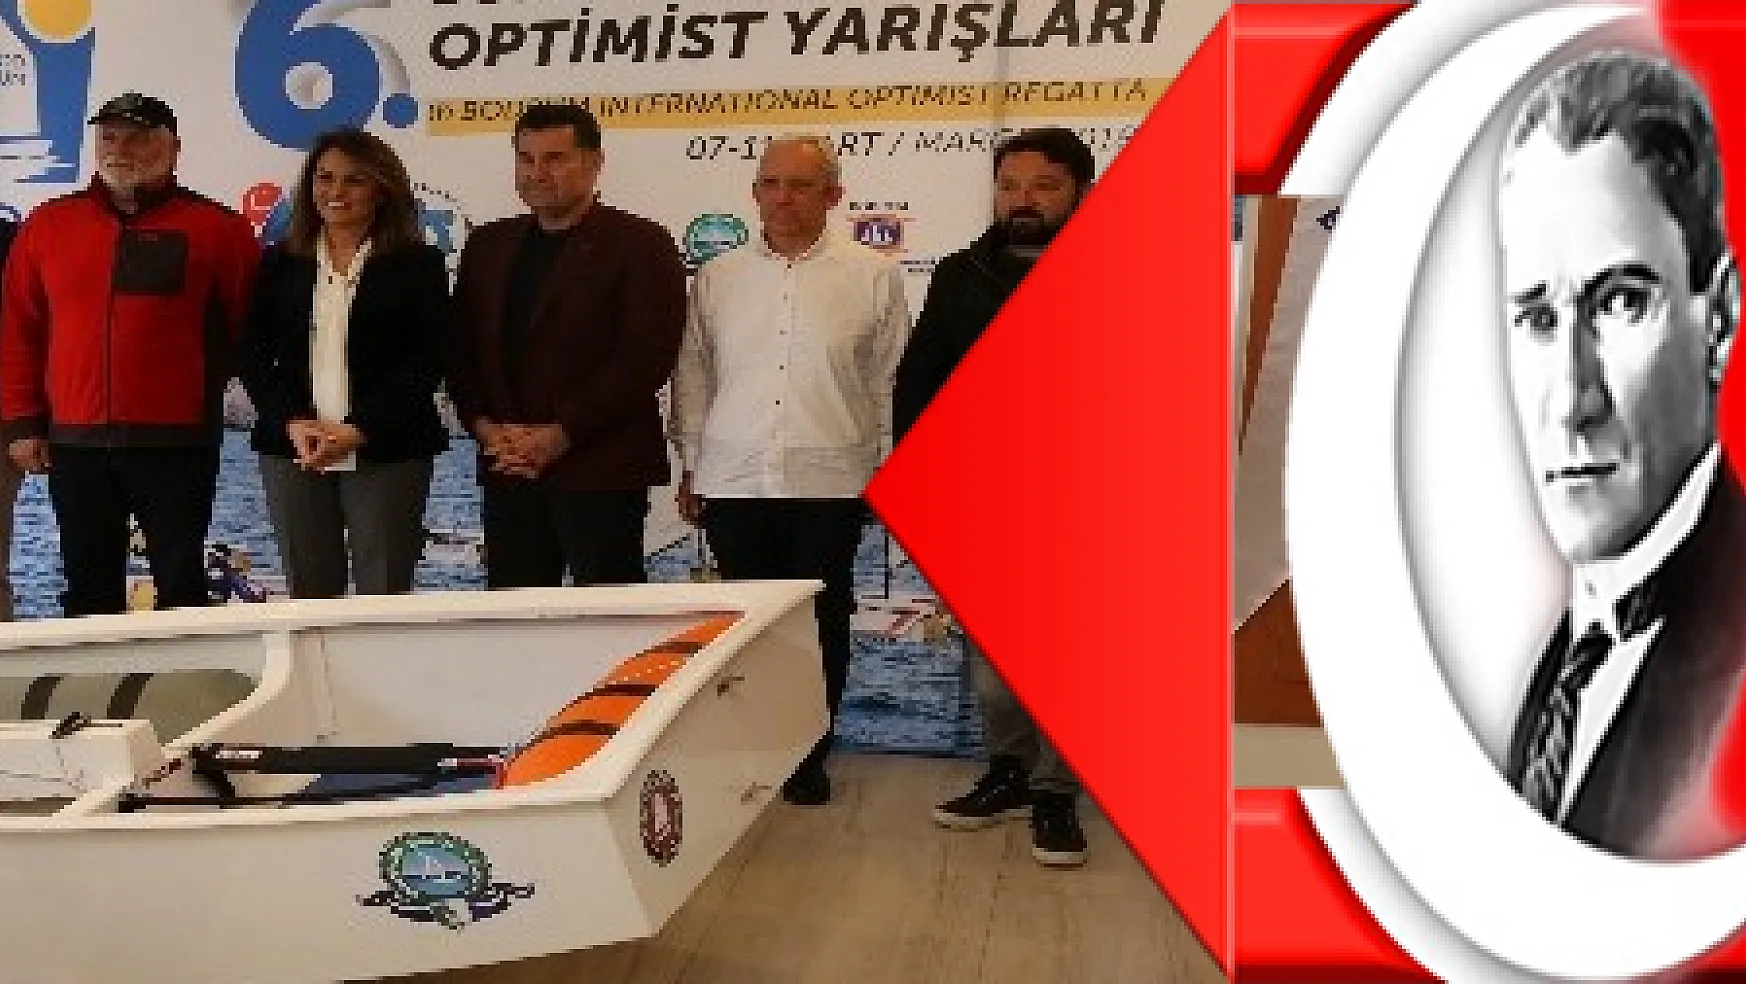 İlk Uluslararası optimist yarışları Bodrumda düzenlenecek